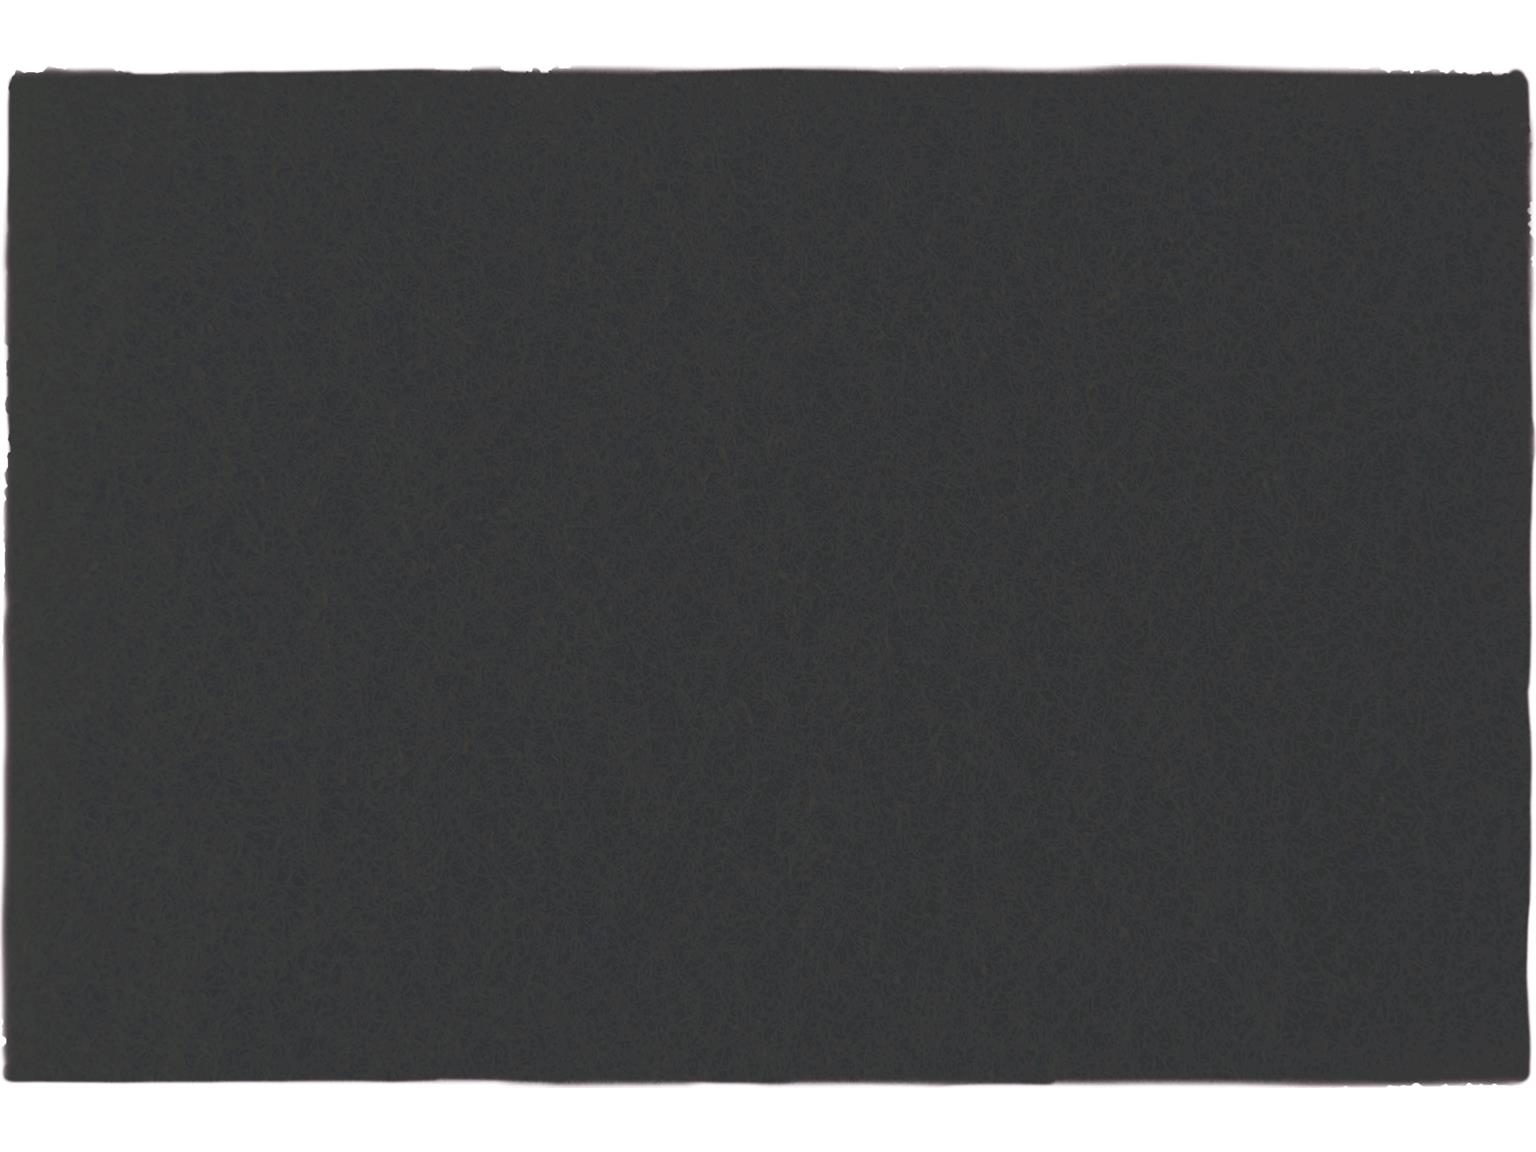 NUMATIC ESM, SSM ZUBEHÖR  Exzenter-Pad Schwarz, 30,5 x 45,8 cm